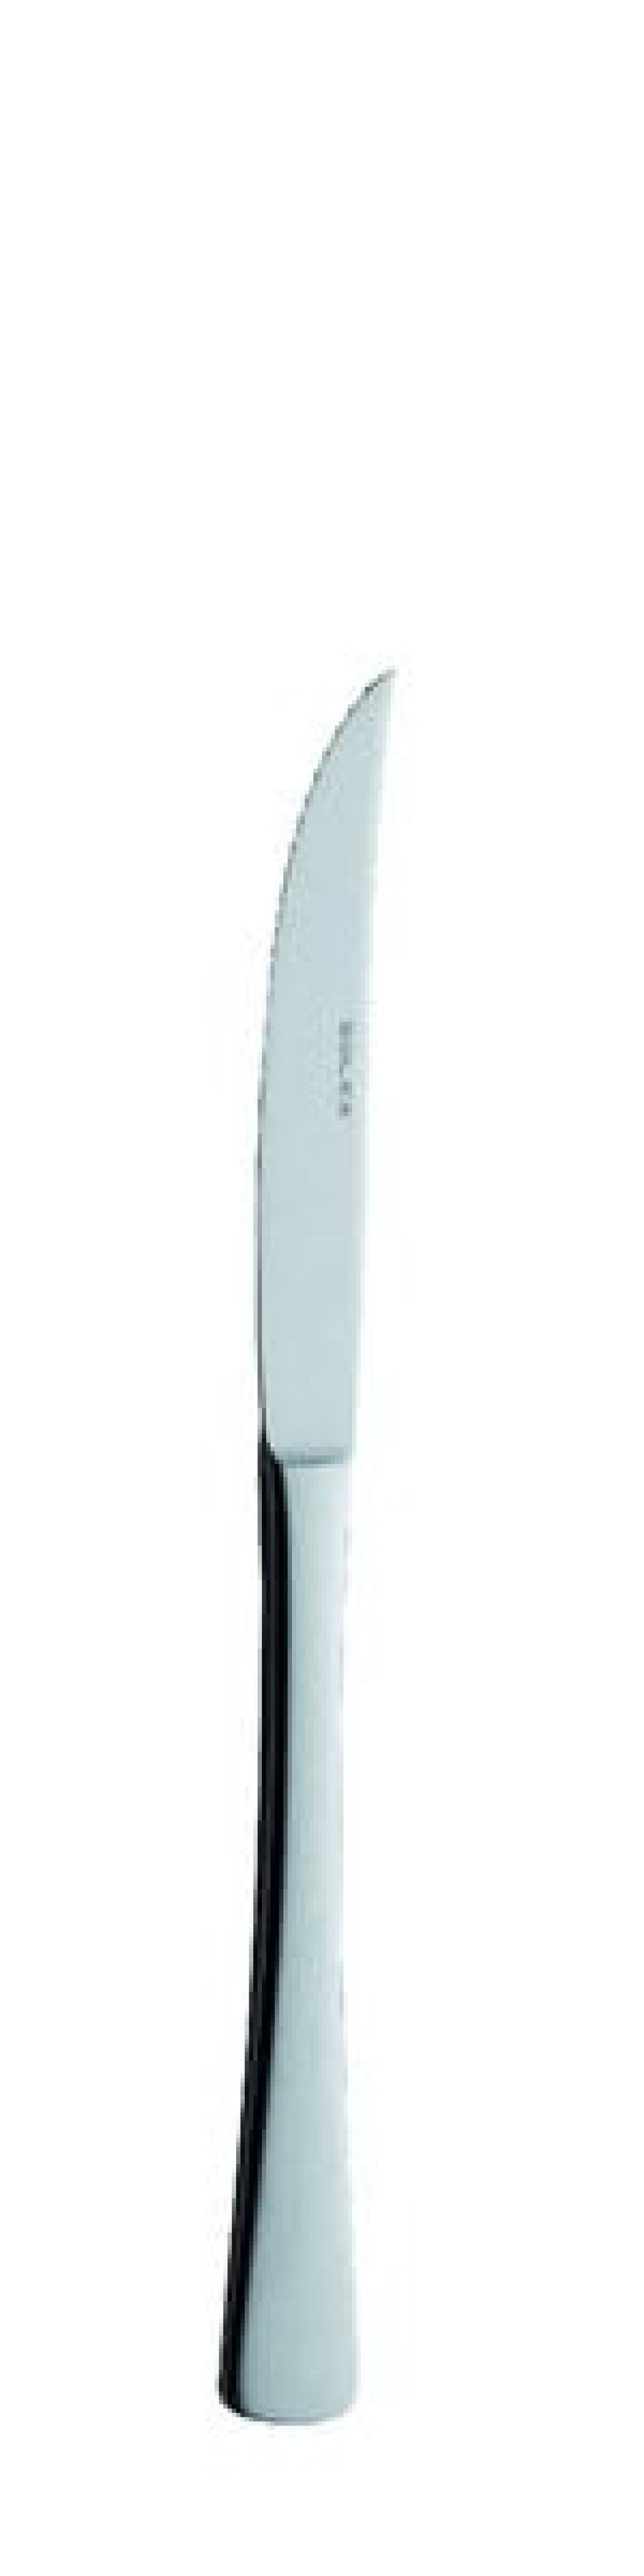 Karina Steakmesser 219 mm - Solex in der Gruppe Tischgedeck / Besteck / Messer bei The Kitchen Lab (1284-21451)